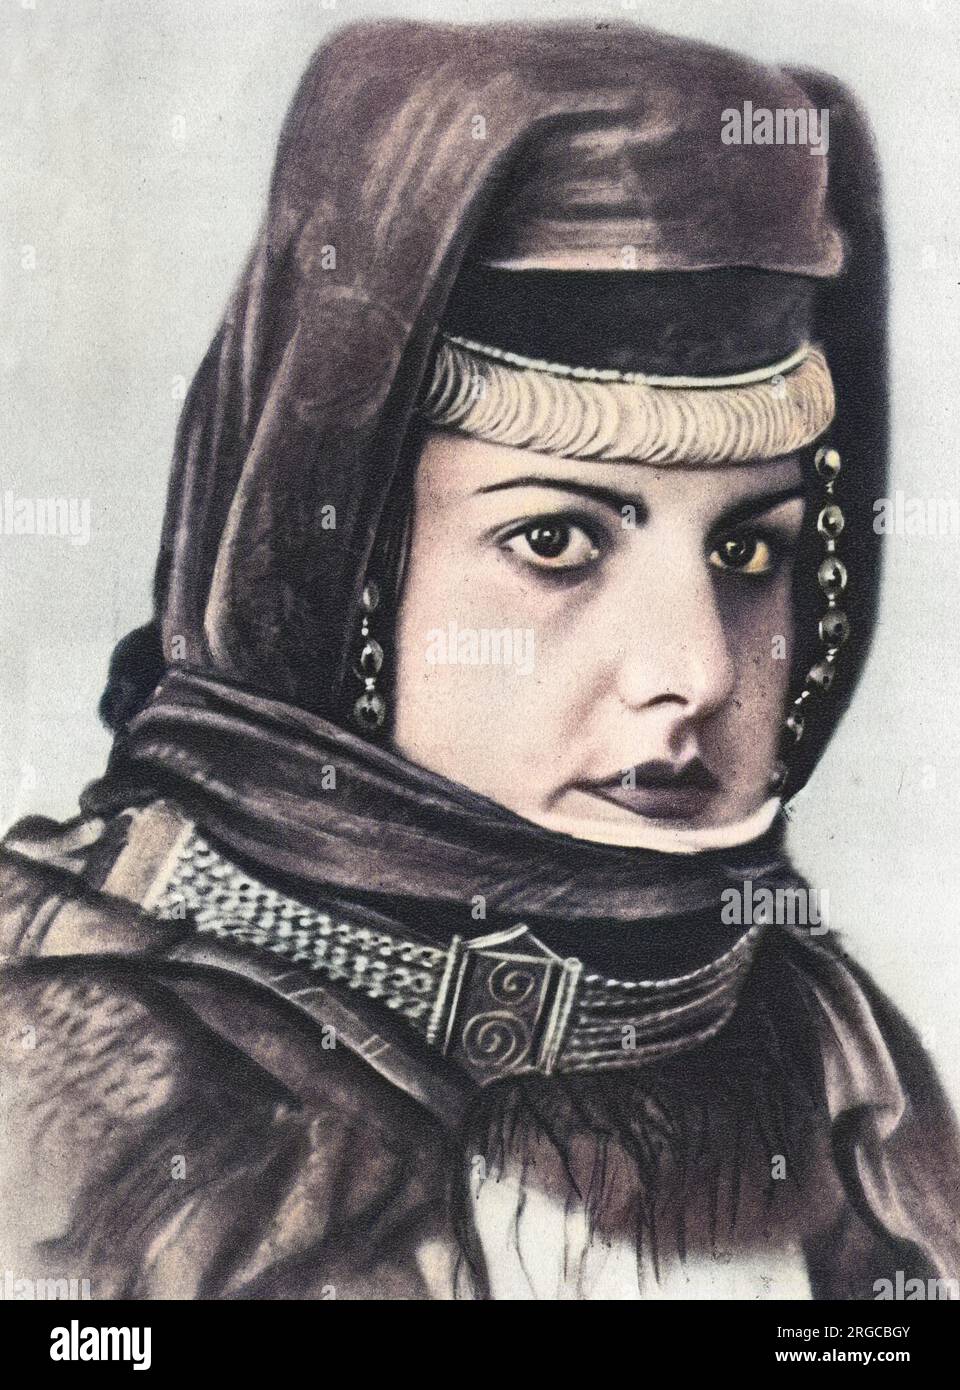 Wunderschönes Fotoporträt aus dem sowjetischen Armenien - Kollektivfrau - armenischer Bauer. Stockfoto